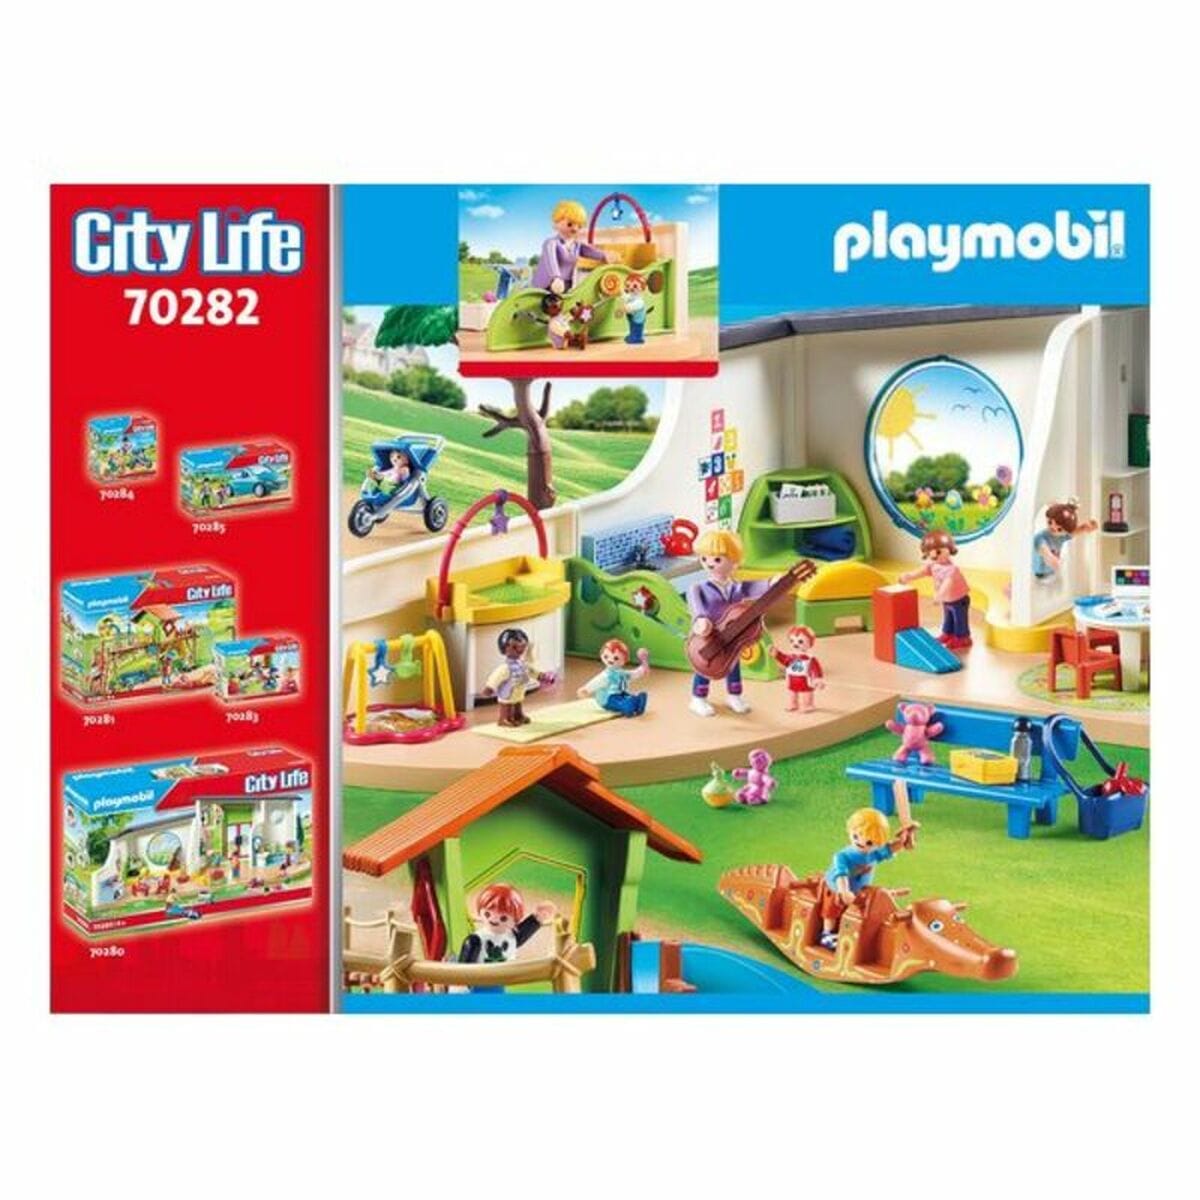 Playmobil Spielzeug | Kostüme > Spielzeug und Spiele > Weiteres spielzeug Playset City Life Baby Room Playmobil 70282 (40 pcs)